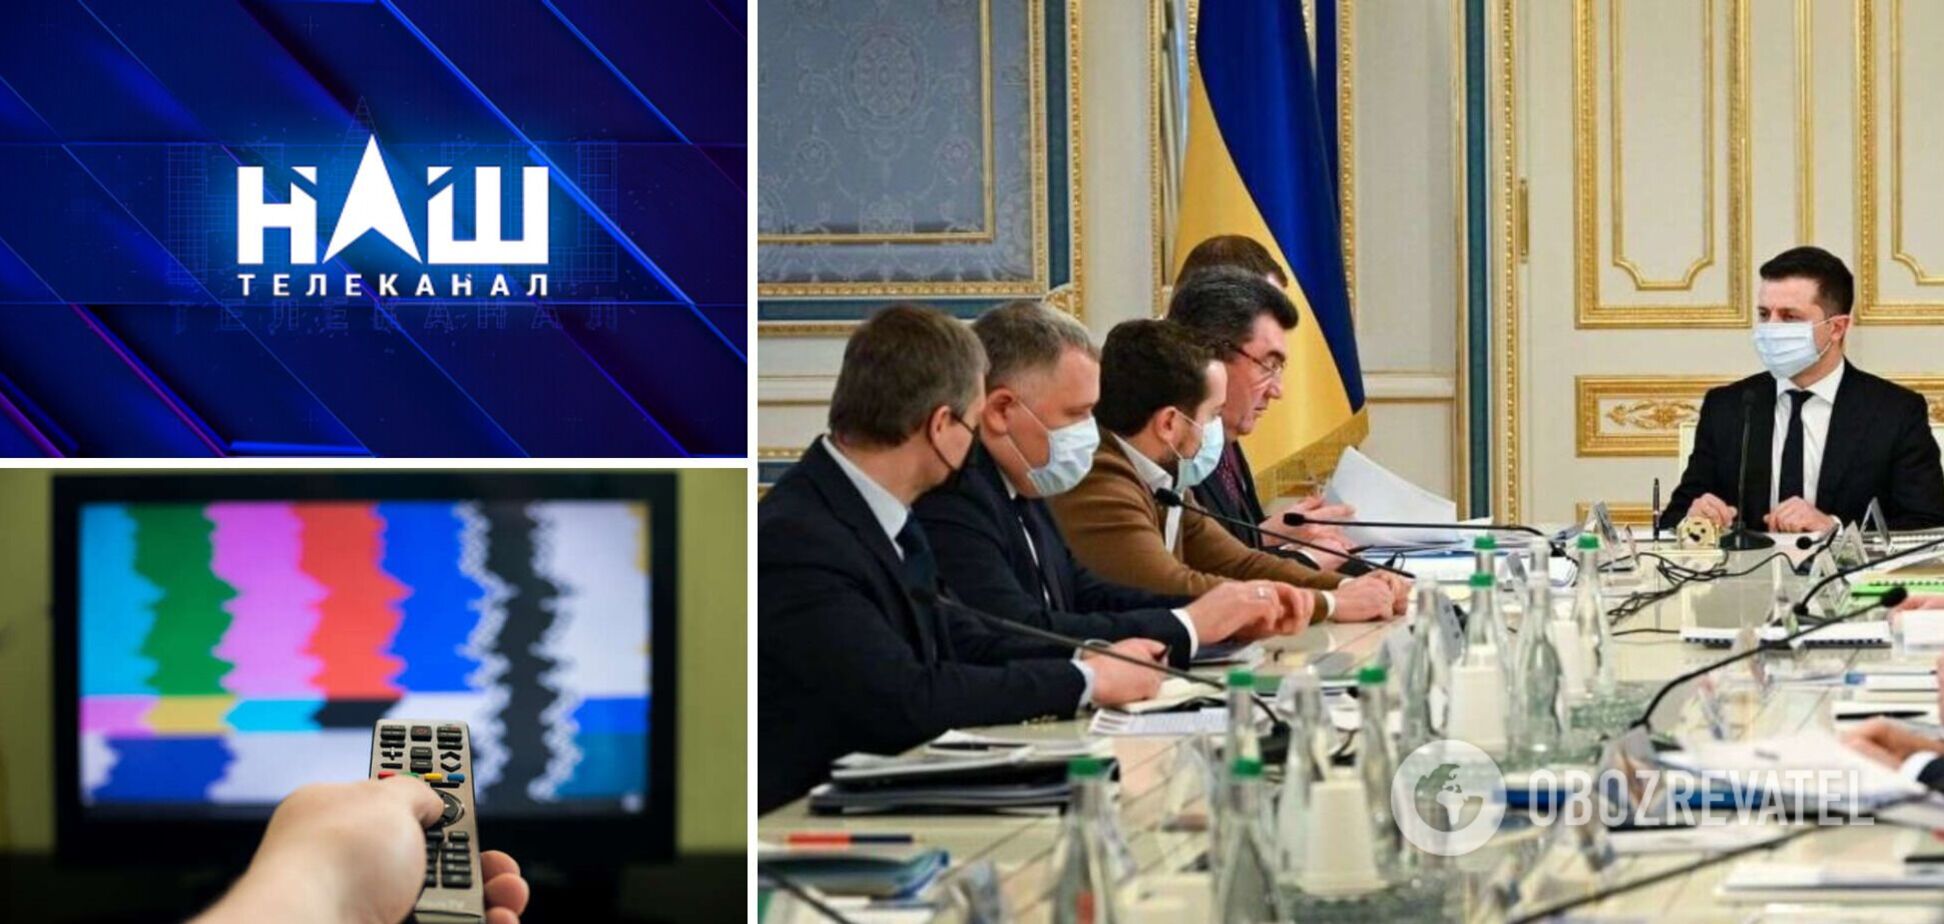 СНБО на заседании в Харькове рассмотрит введение санкций против телеканала 'НАШ'